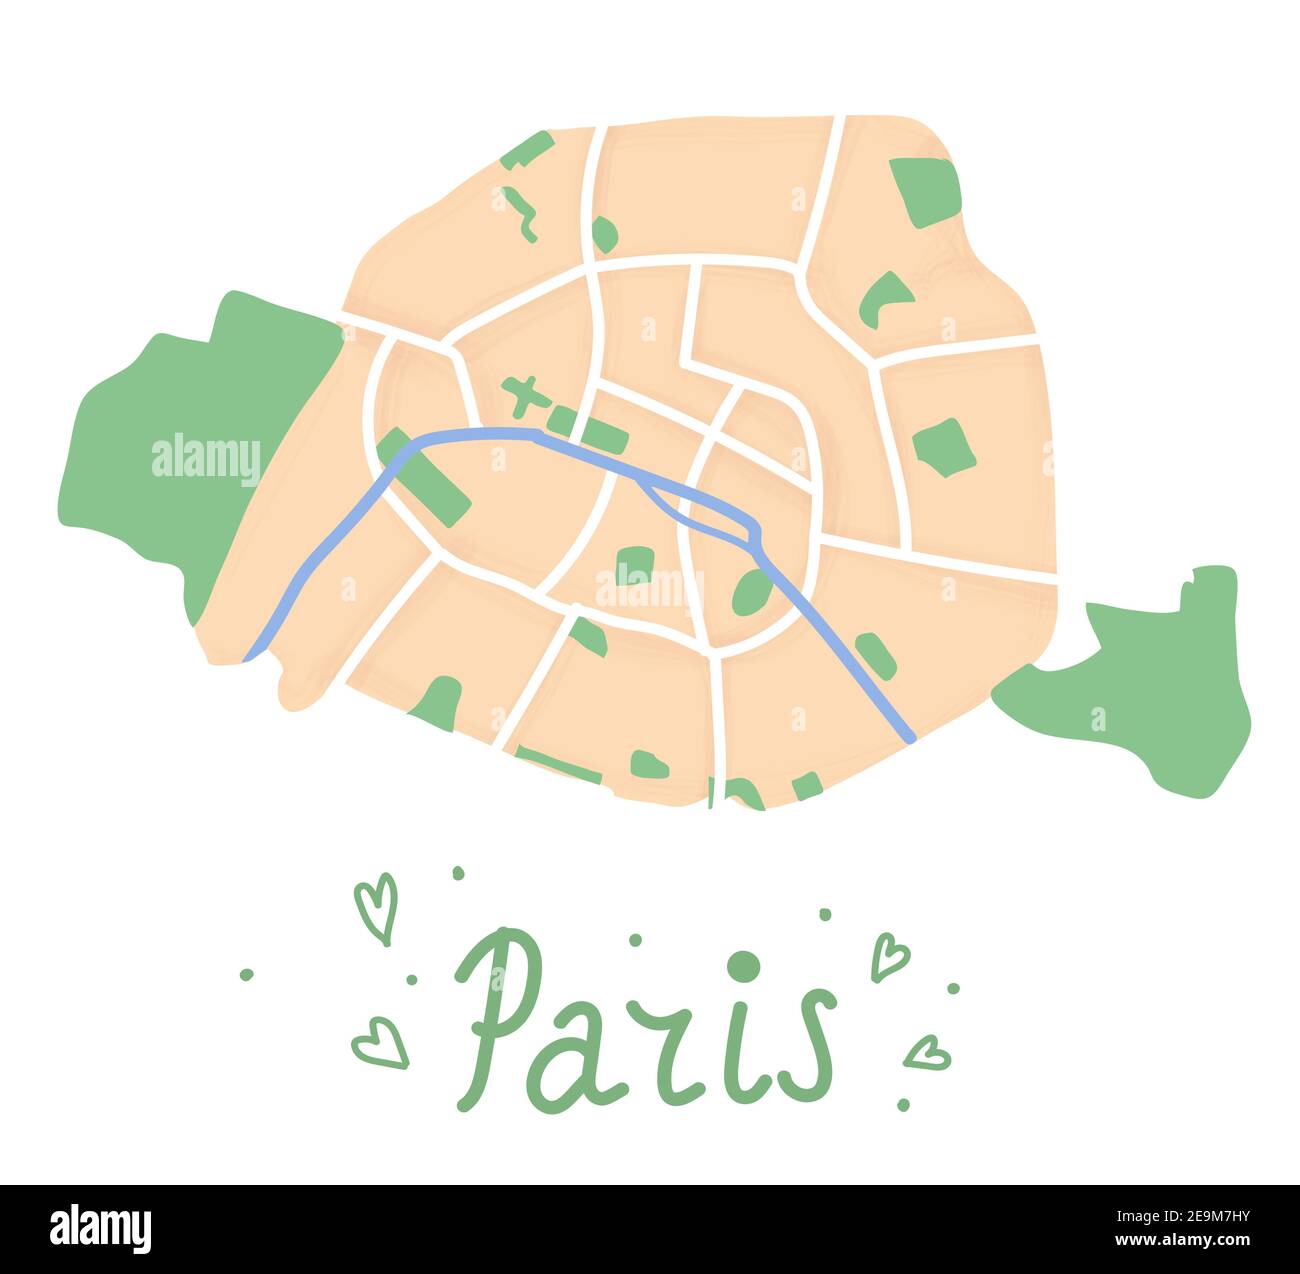 Cartoon flache Karte des Zentrums von Paris. Der Fluss seine ist blau, der Bois de Boulogne und der Bois de Vincennes sind grün. Lustige nette europäische Stadtplan. Vect Stock Vektor